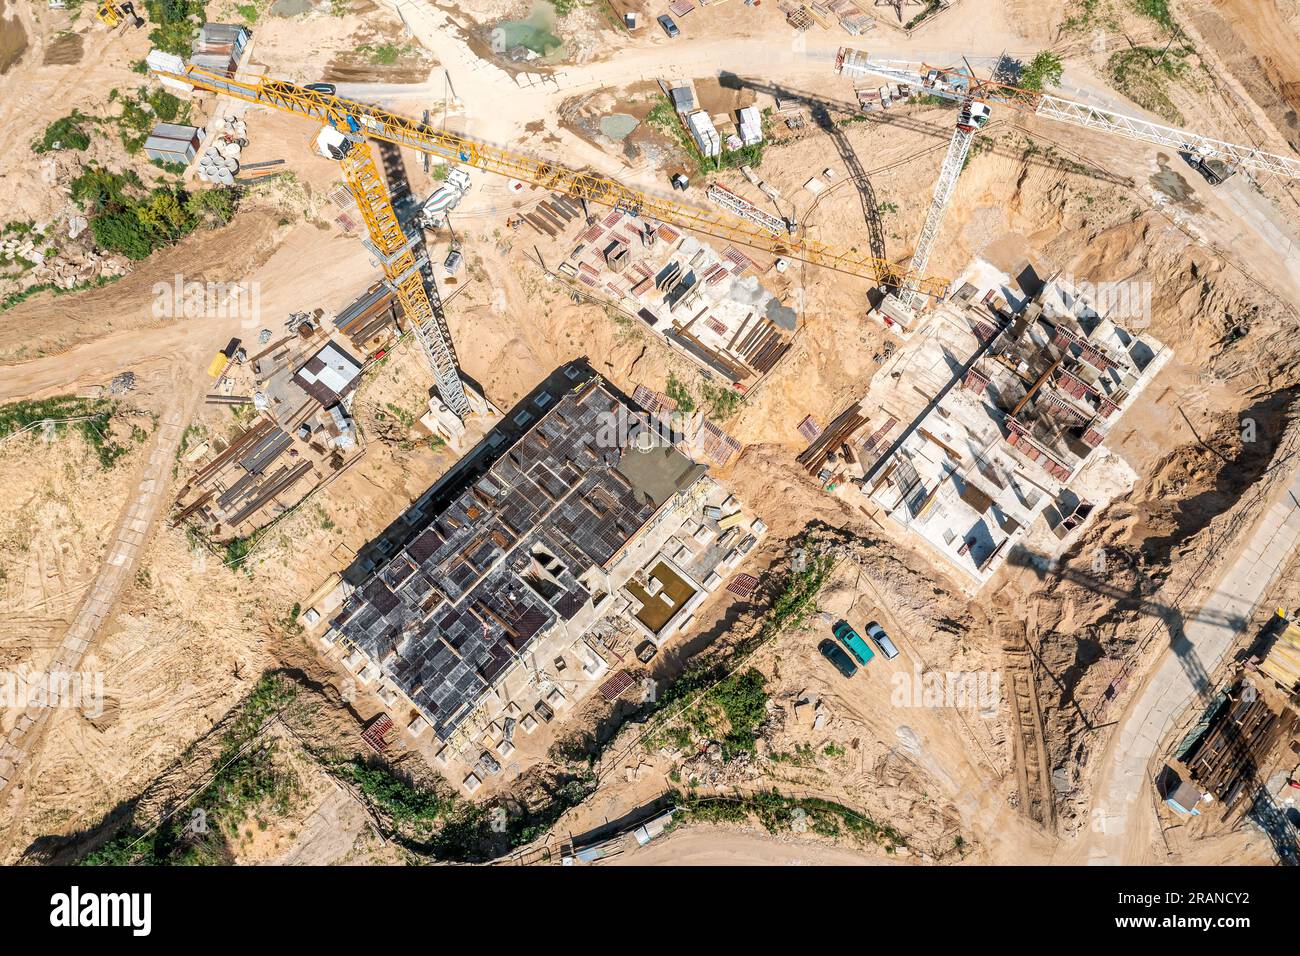 costruzione di fondamenta in cemento armato per edifici residenziali di alto livello. foto aerea, vista dall'alto. Foto Stock